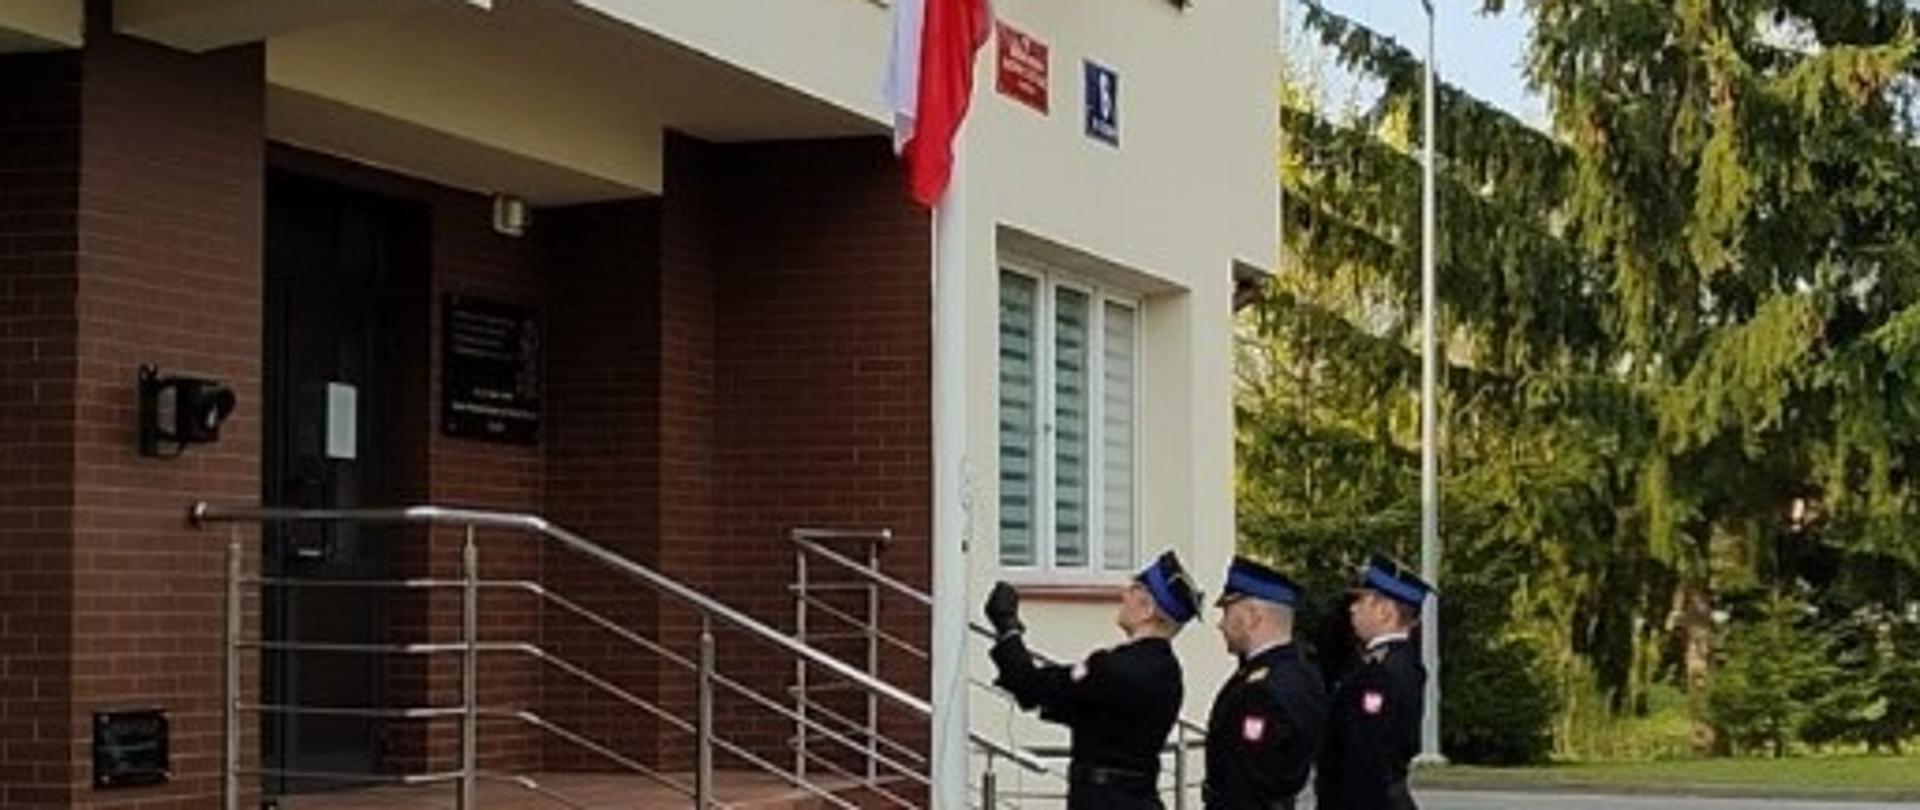 strażacy w umundurowaniu galowy wciągają flagę na maszt. dowódca pocztu i asystujący oddają honor flagowy wciąga flagę